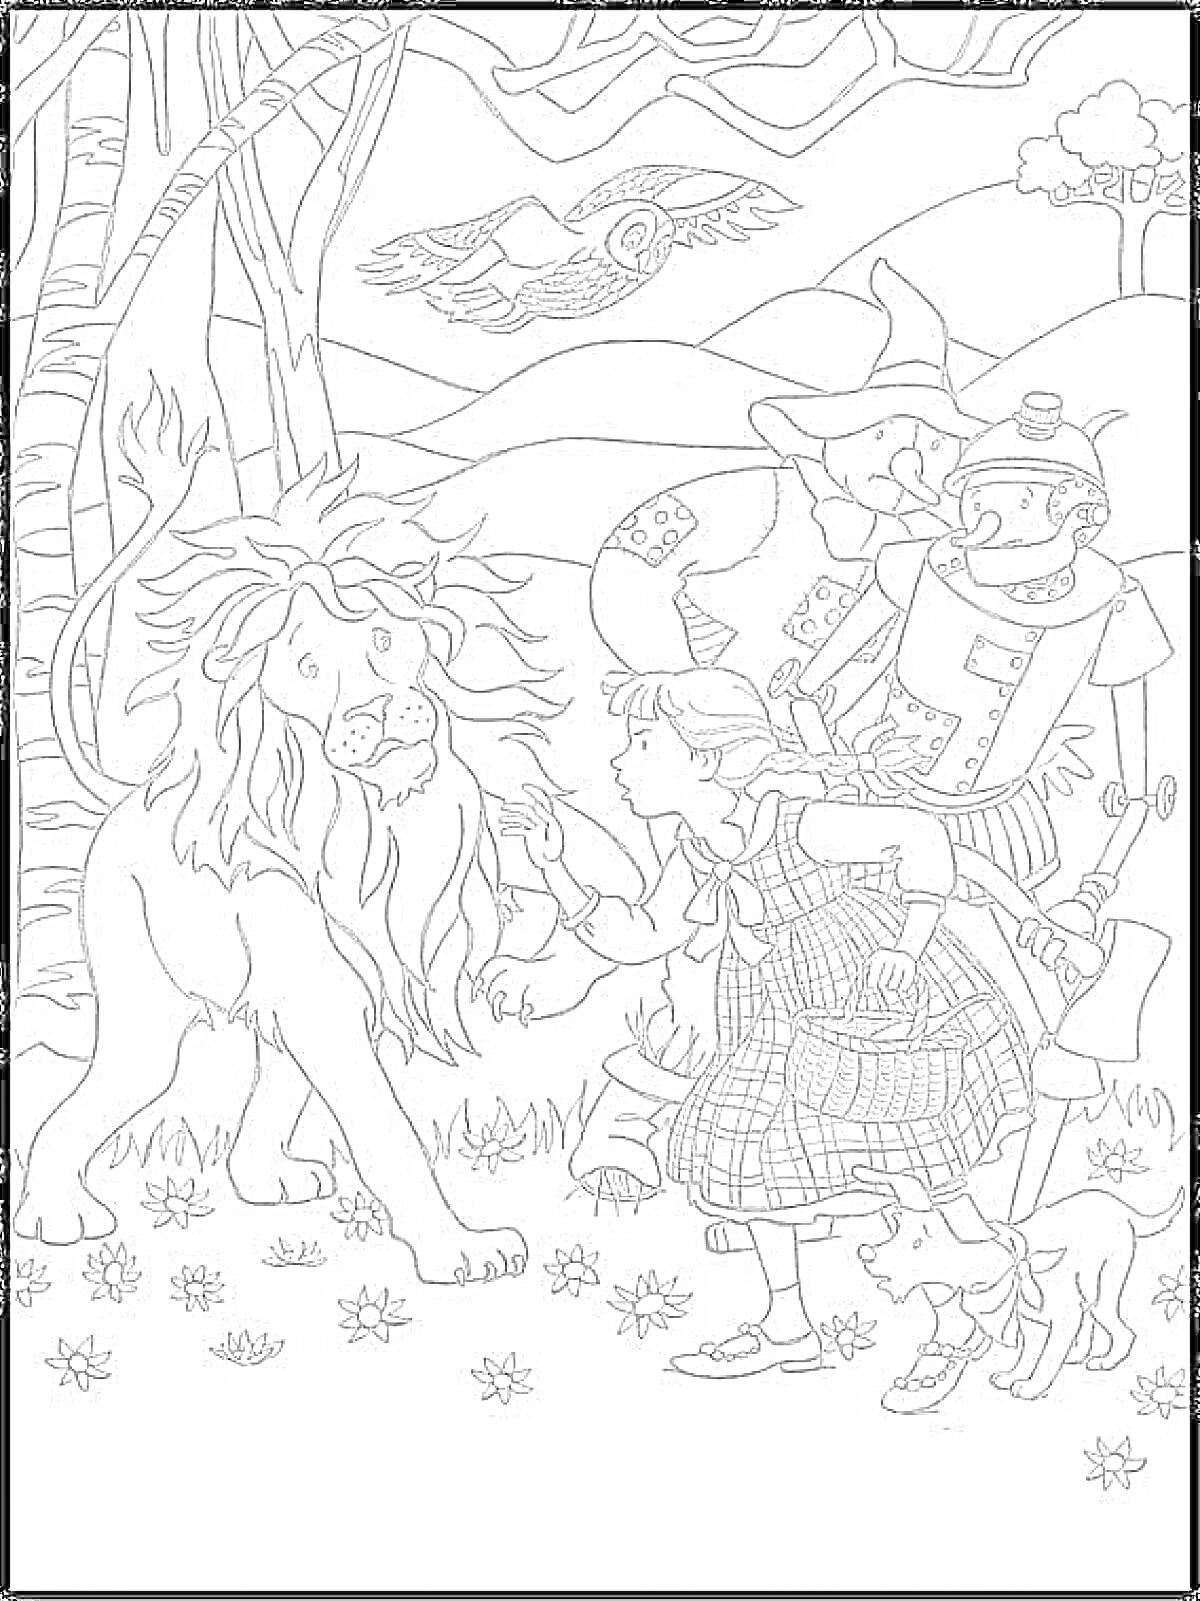 Раскраска Лев, девочка с собачкой, чучело и железный человек на фоне деревьев и птицы.